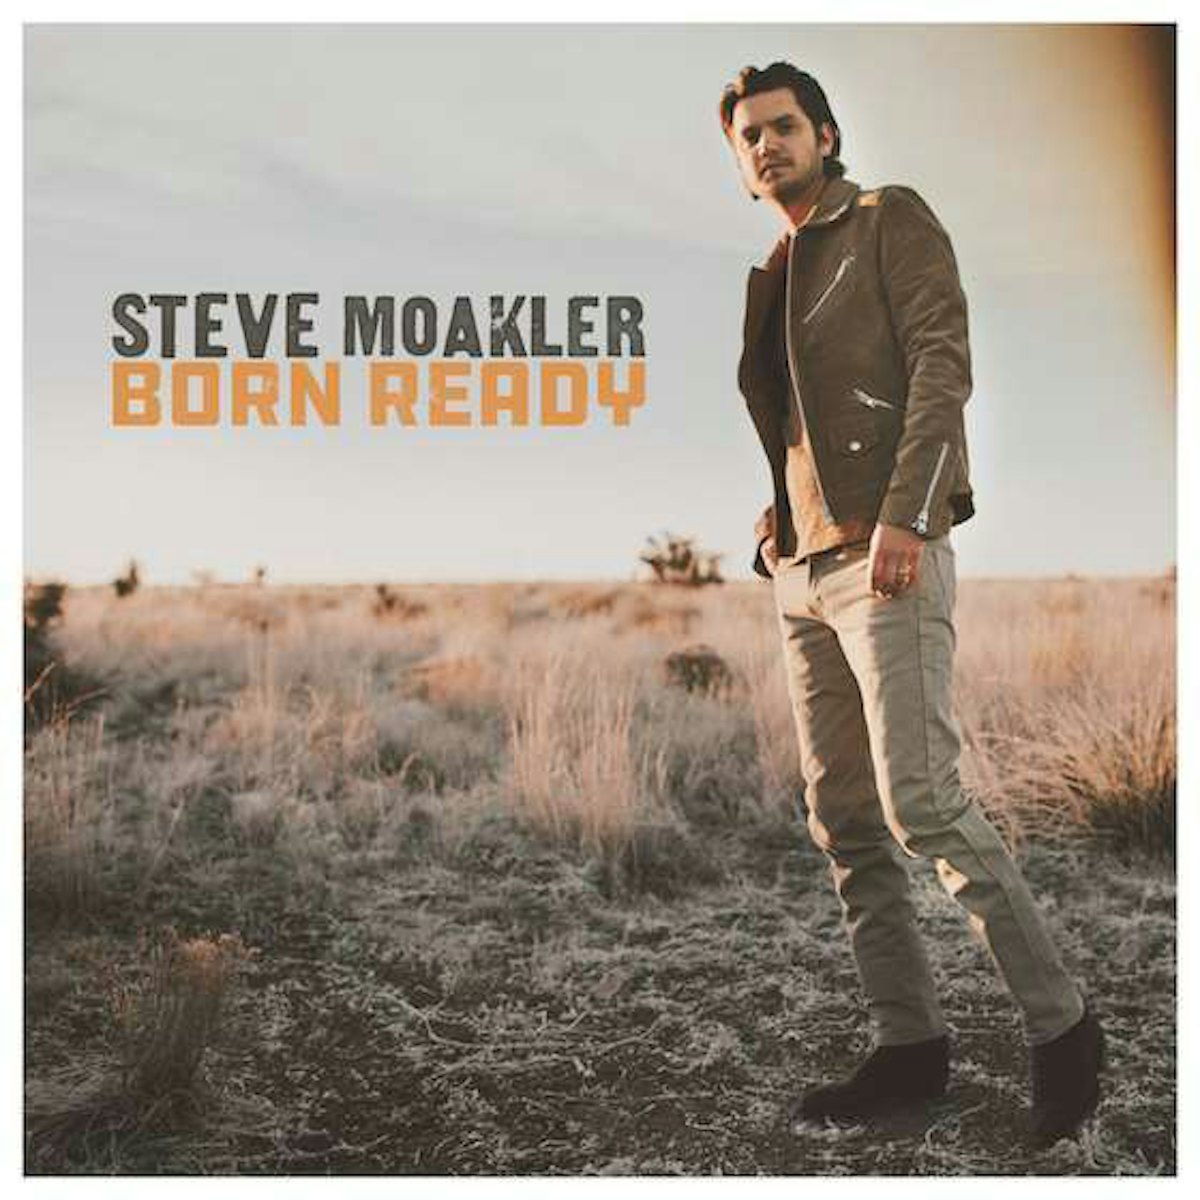 Steve Moakler - Every Girl (Official Audio) 